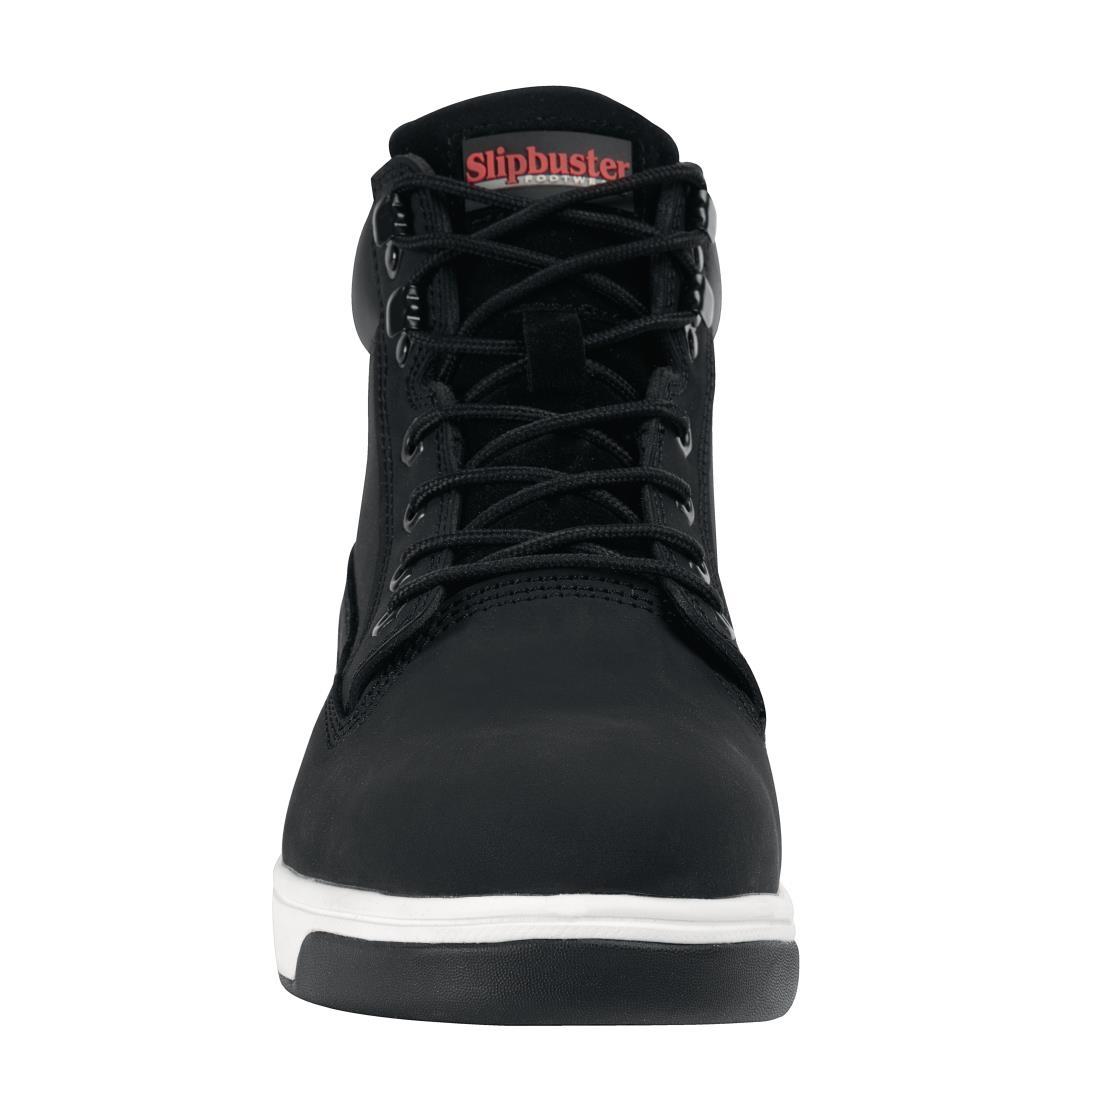 Slipbuster Sneaker Boots Black 39 - BB422-39  - 3